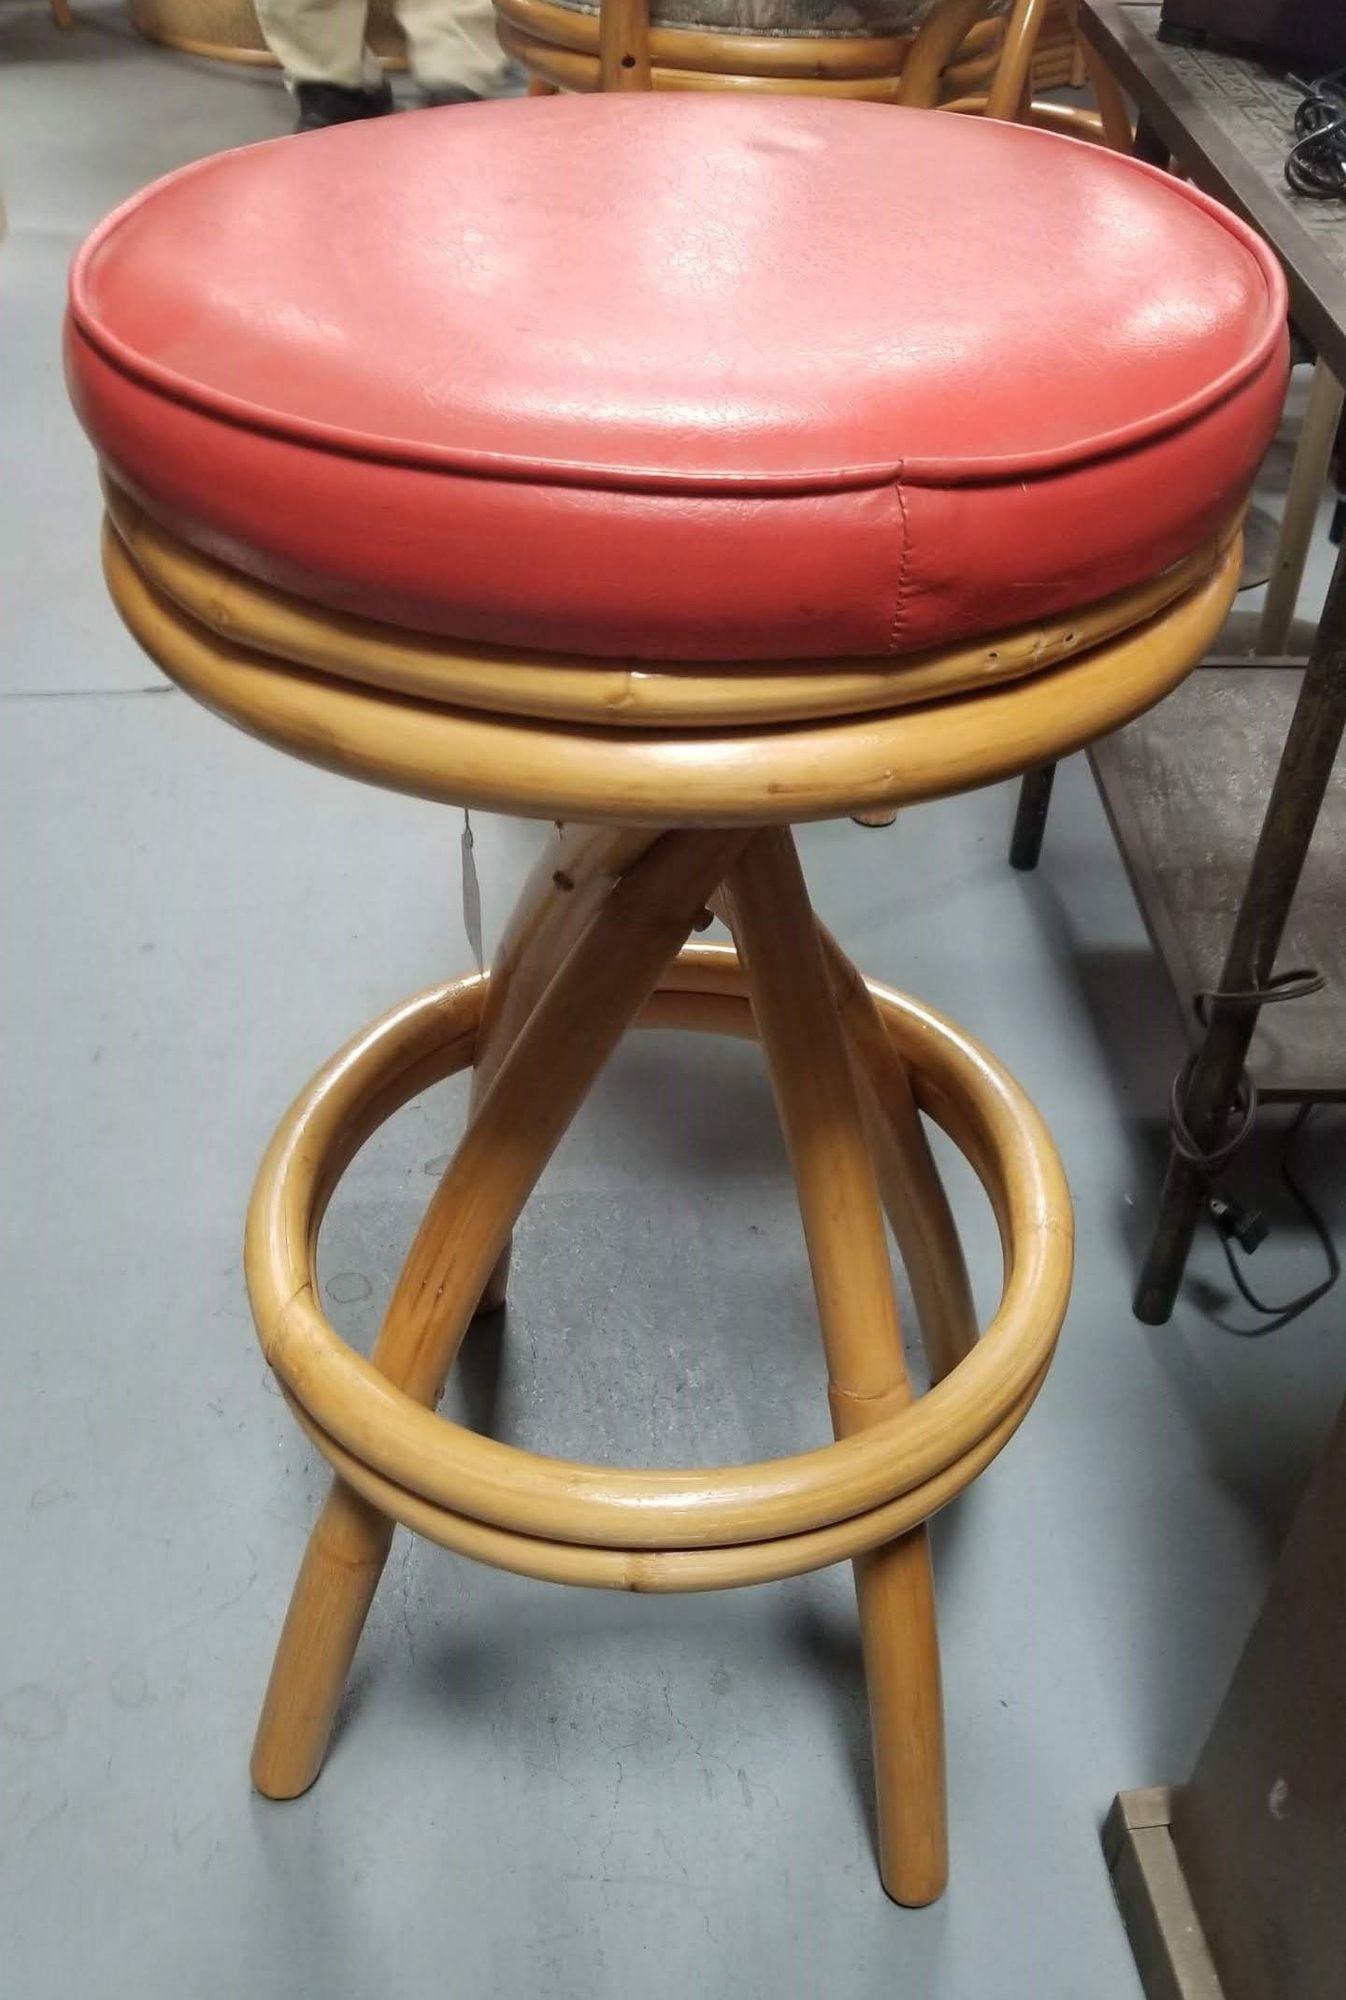 Restaurierte einbeinige Barhocker mit Spirale, doppelter Fußstütze und drehbaren roten Sitzen.

Sitzhöhe: 30